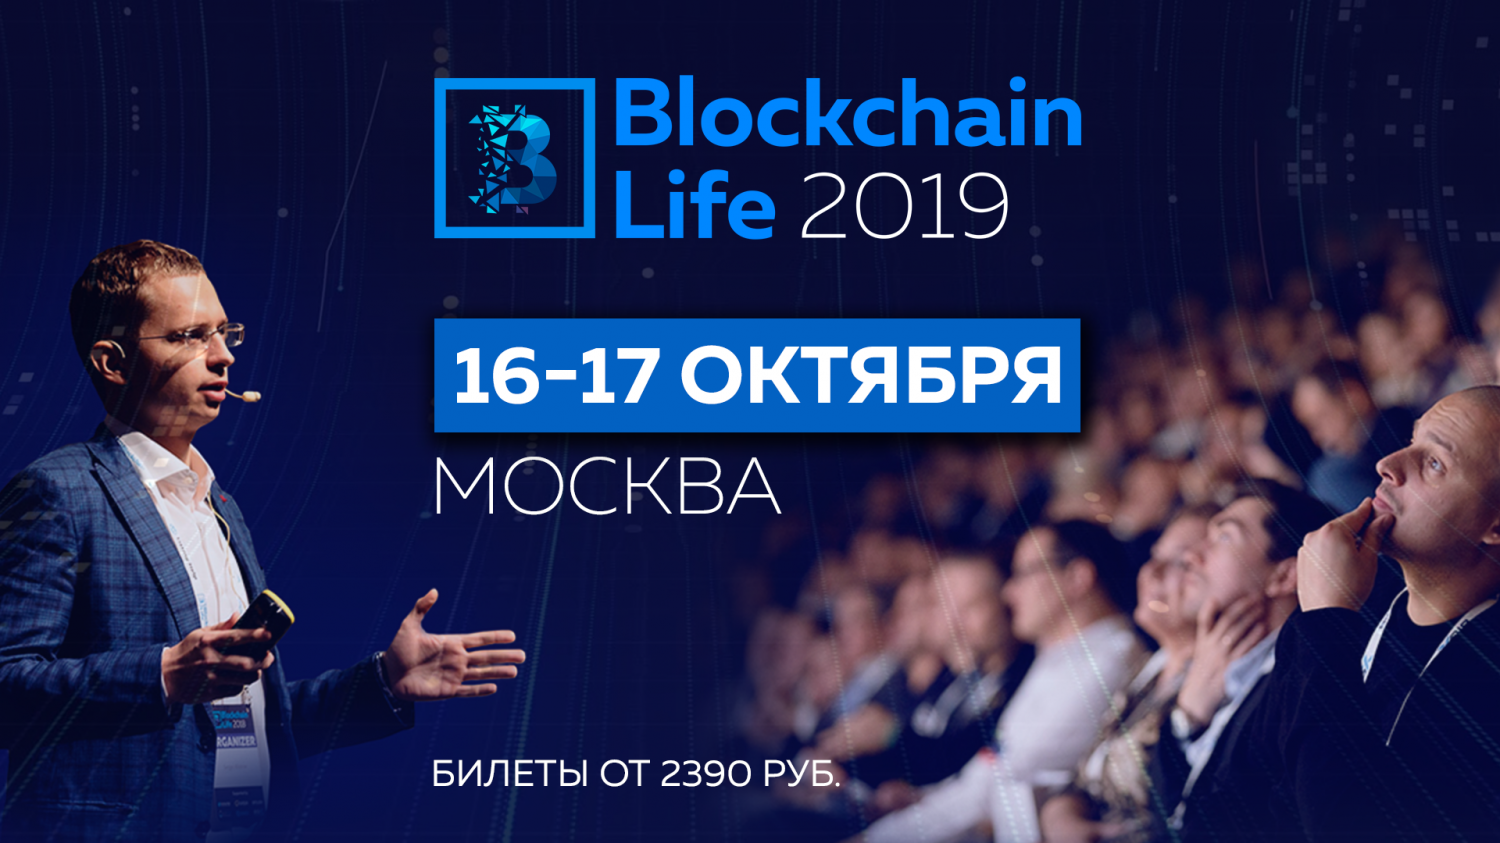 Форум Blockchain Life пройдет в Москве с 16 по 17 октября